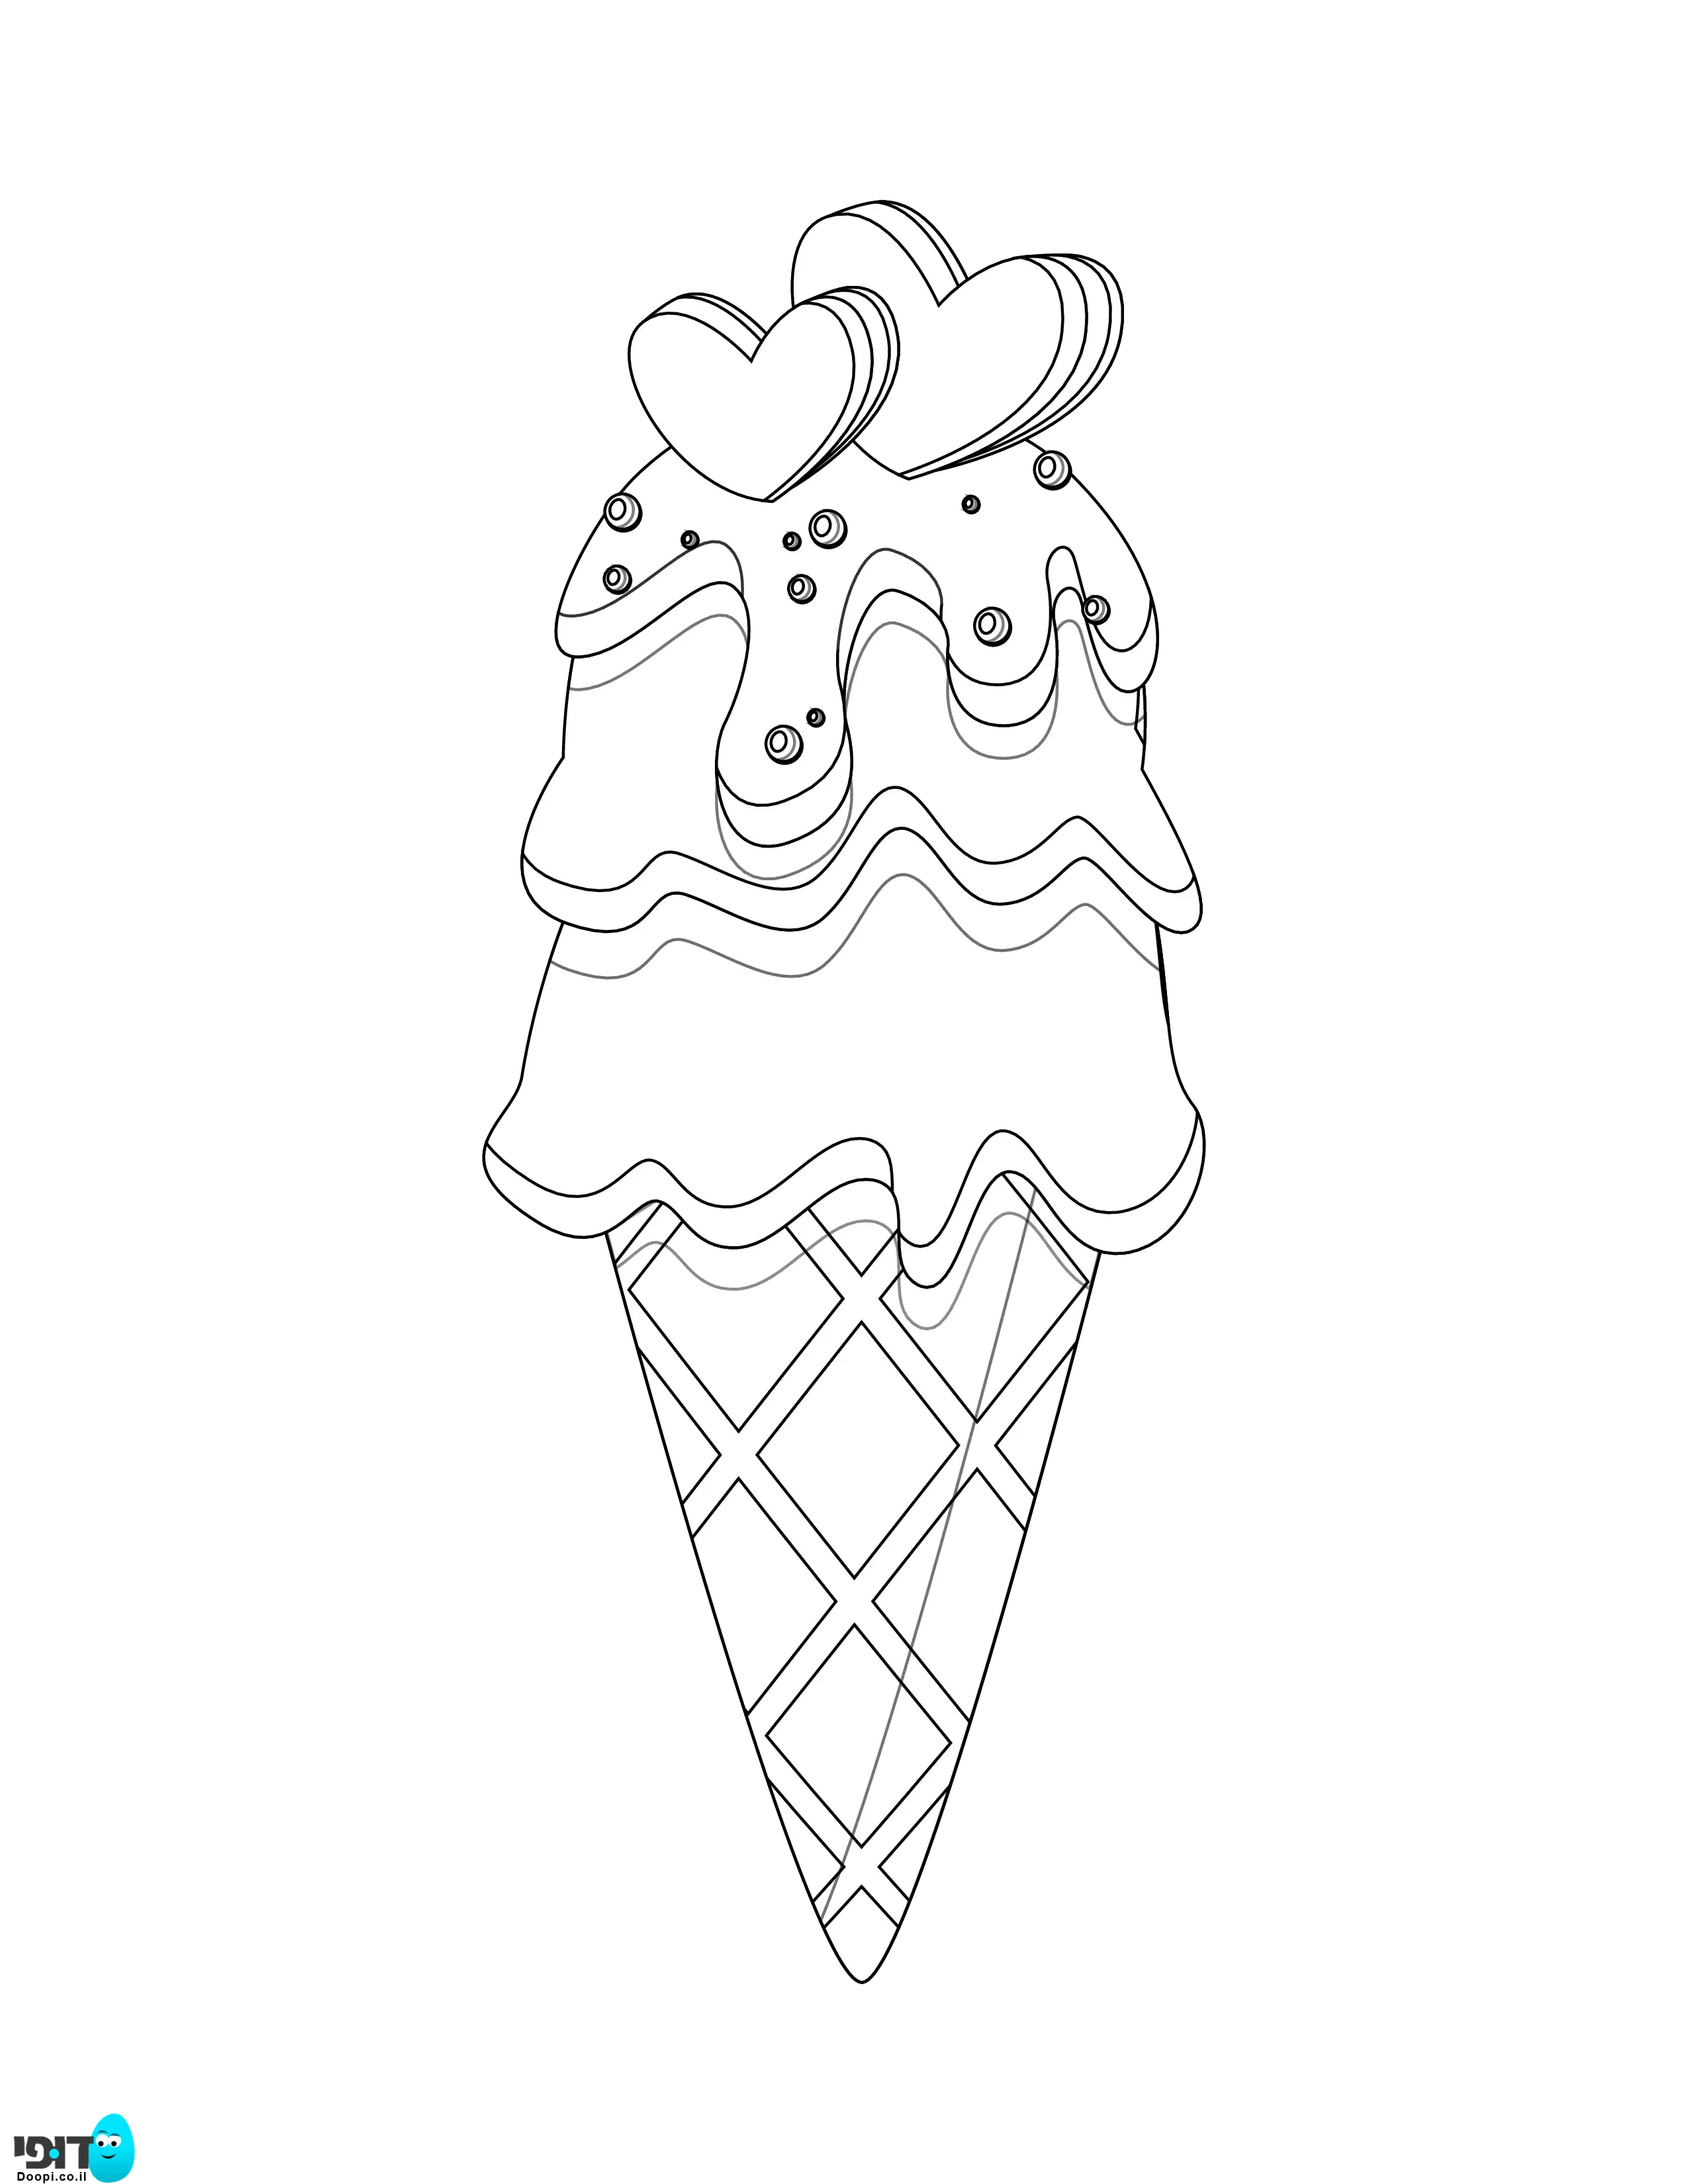 דף צביעה גלידה עם לבבות